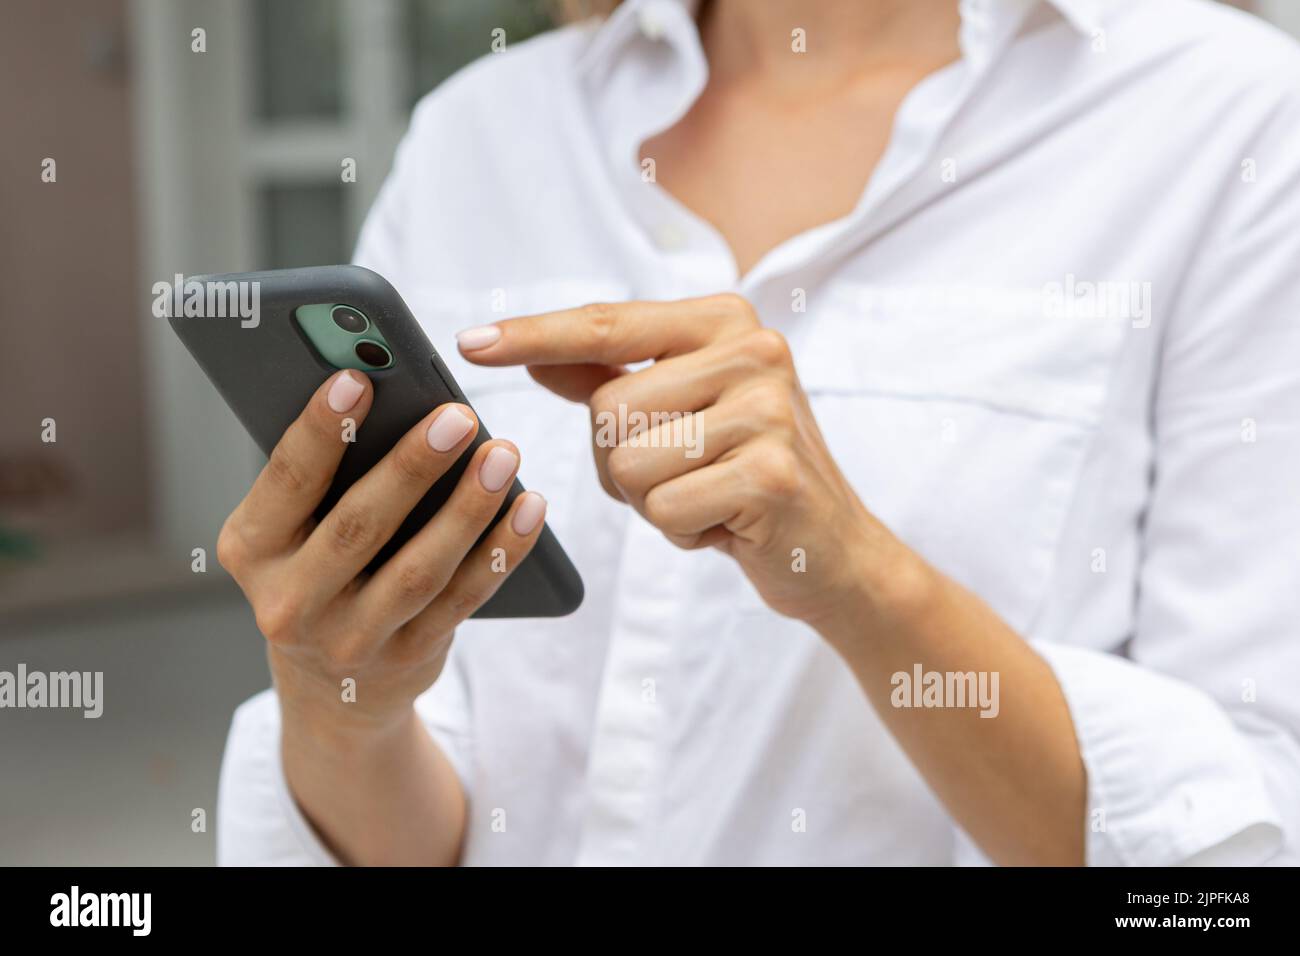 le mani femminili tengono un telefono cellulare moderno per strada. notizie, istruzione, app moderna, ordine di acquisto, lavoro online Foto Stock